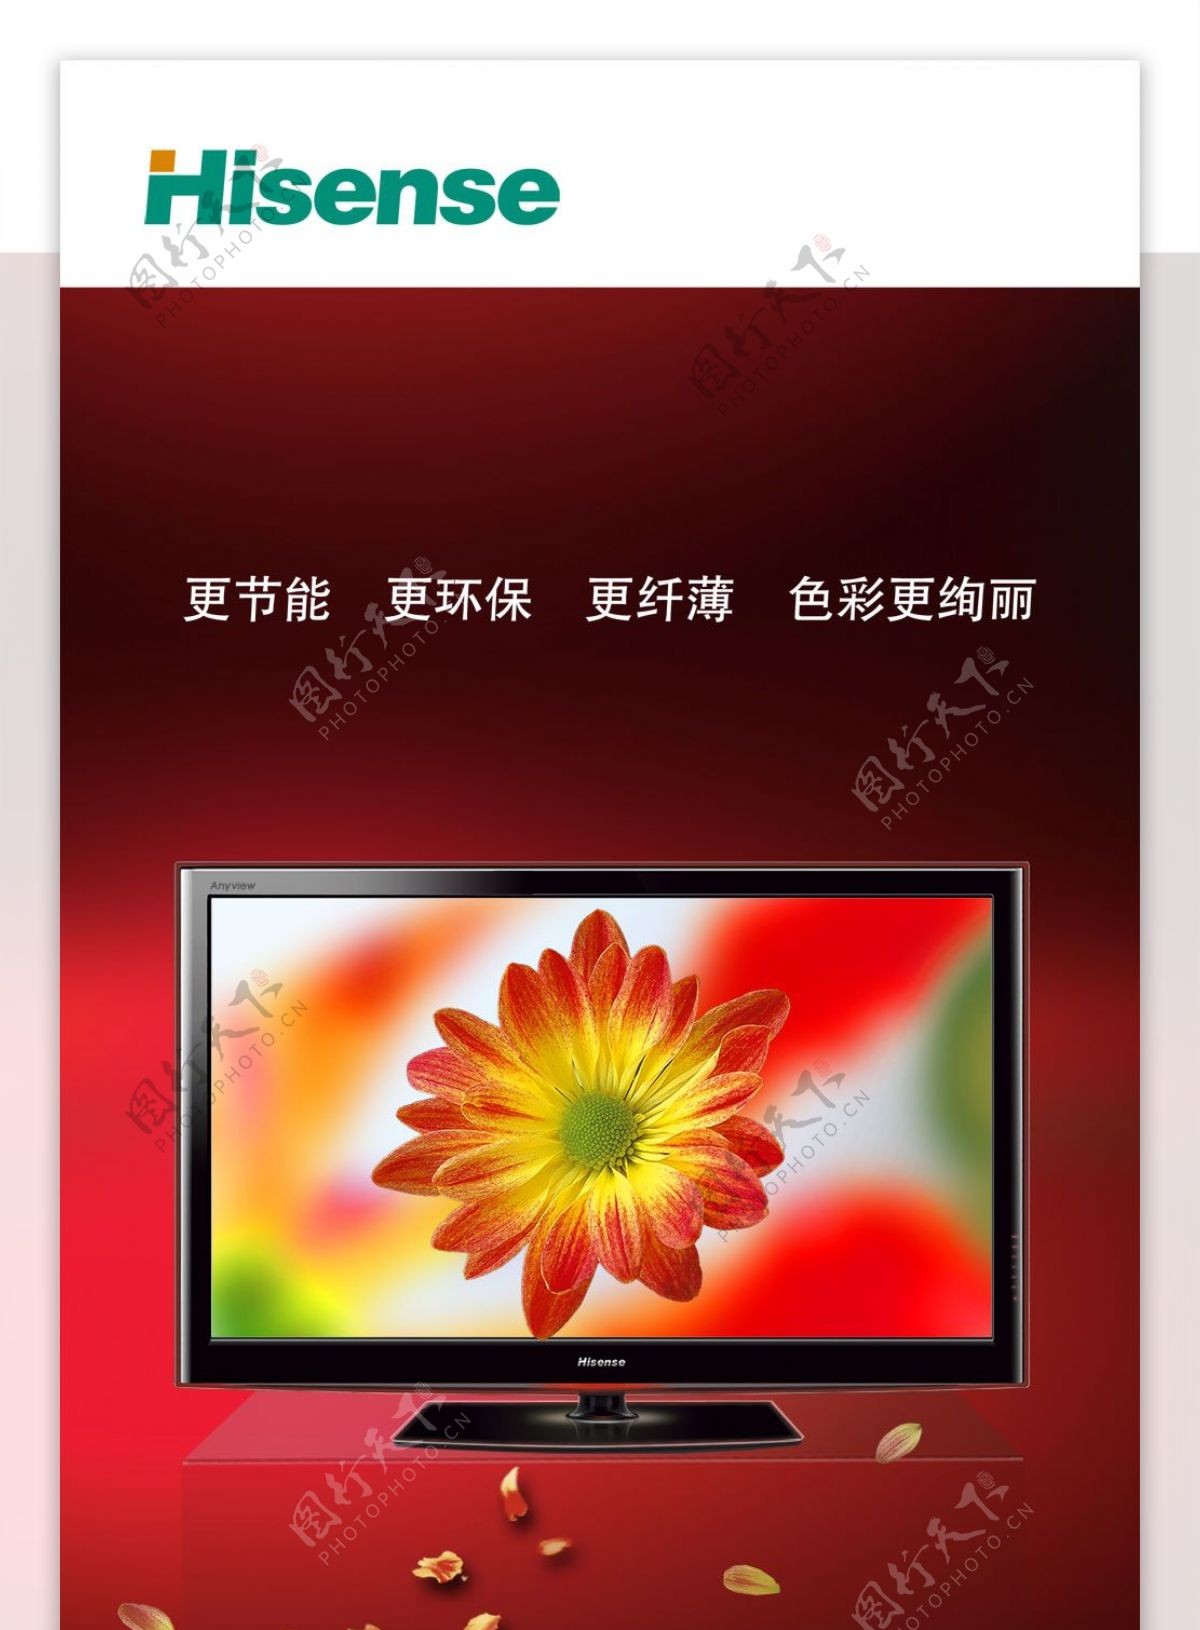 海信平板LED电视广告PSD素材